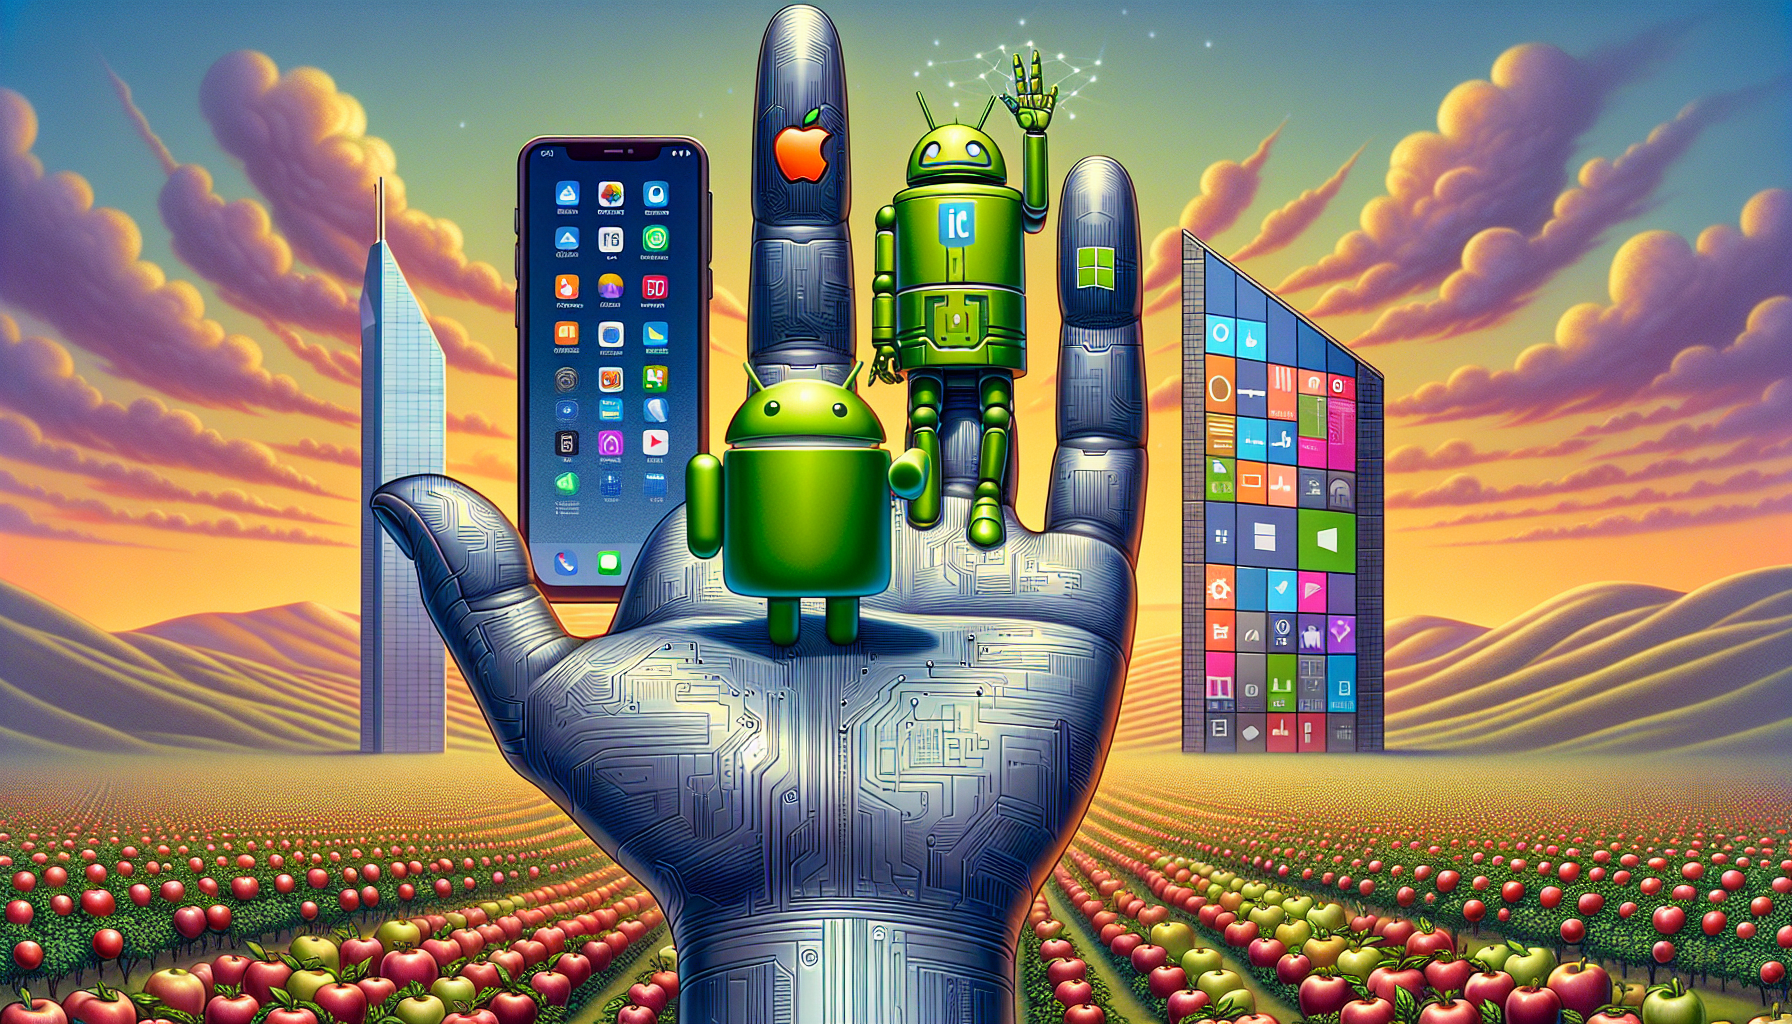 scopri le quote di mercato previste per il 2024 per i sistemi operativi ios, android e windows mobile.